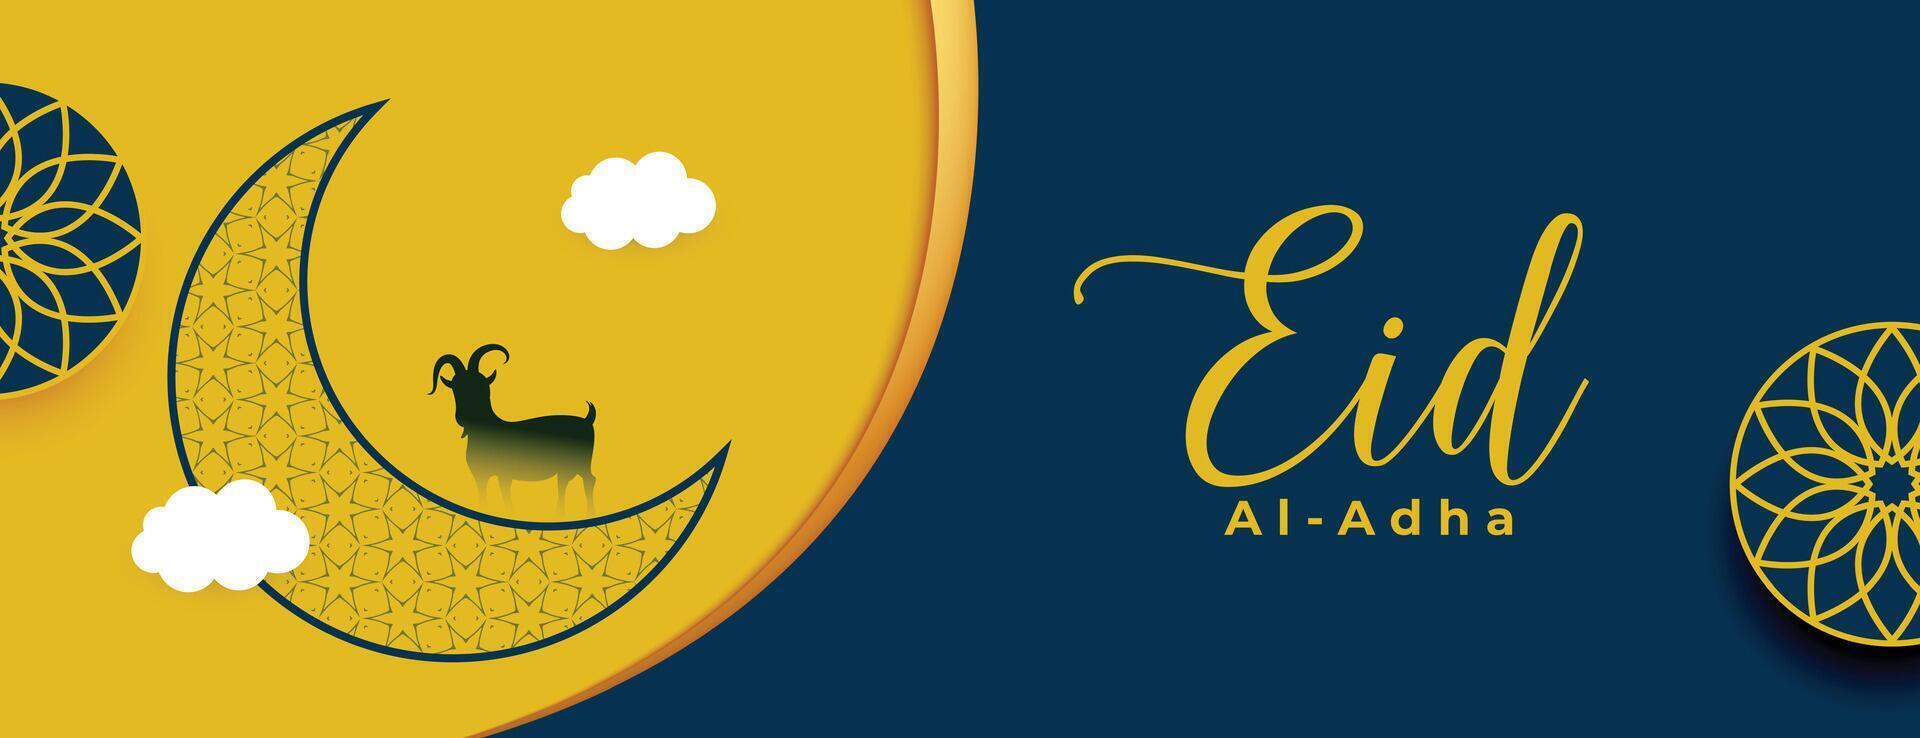 creatief eid al adha mubarak met halve maan maan en geit in Arabisch bloemen stijl vector